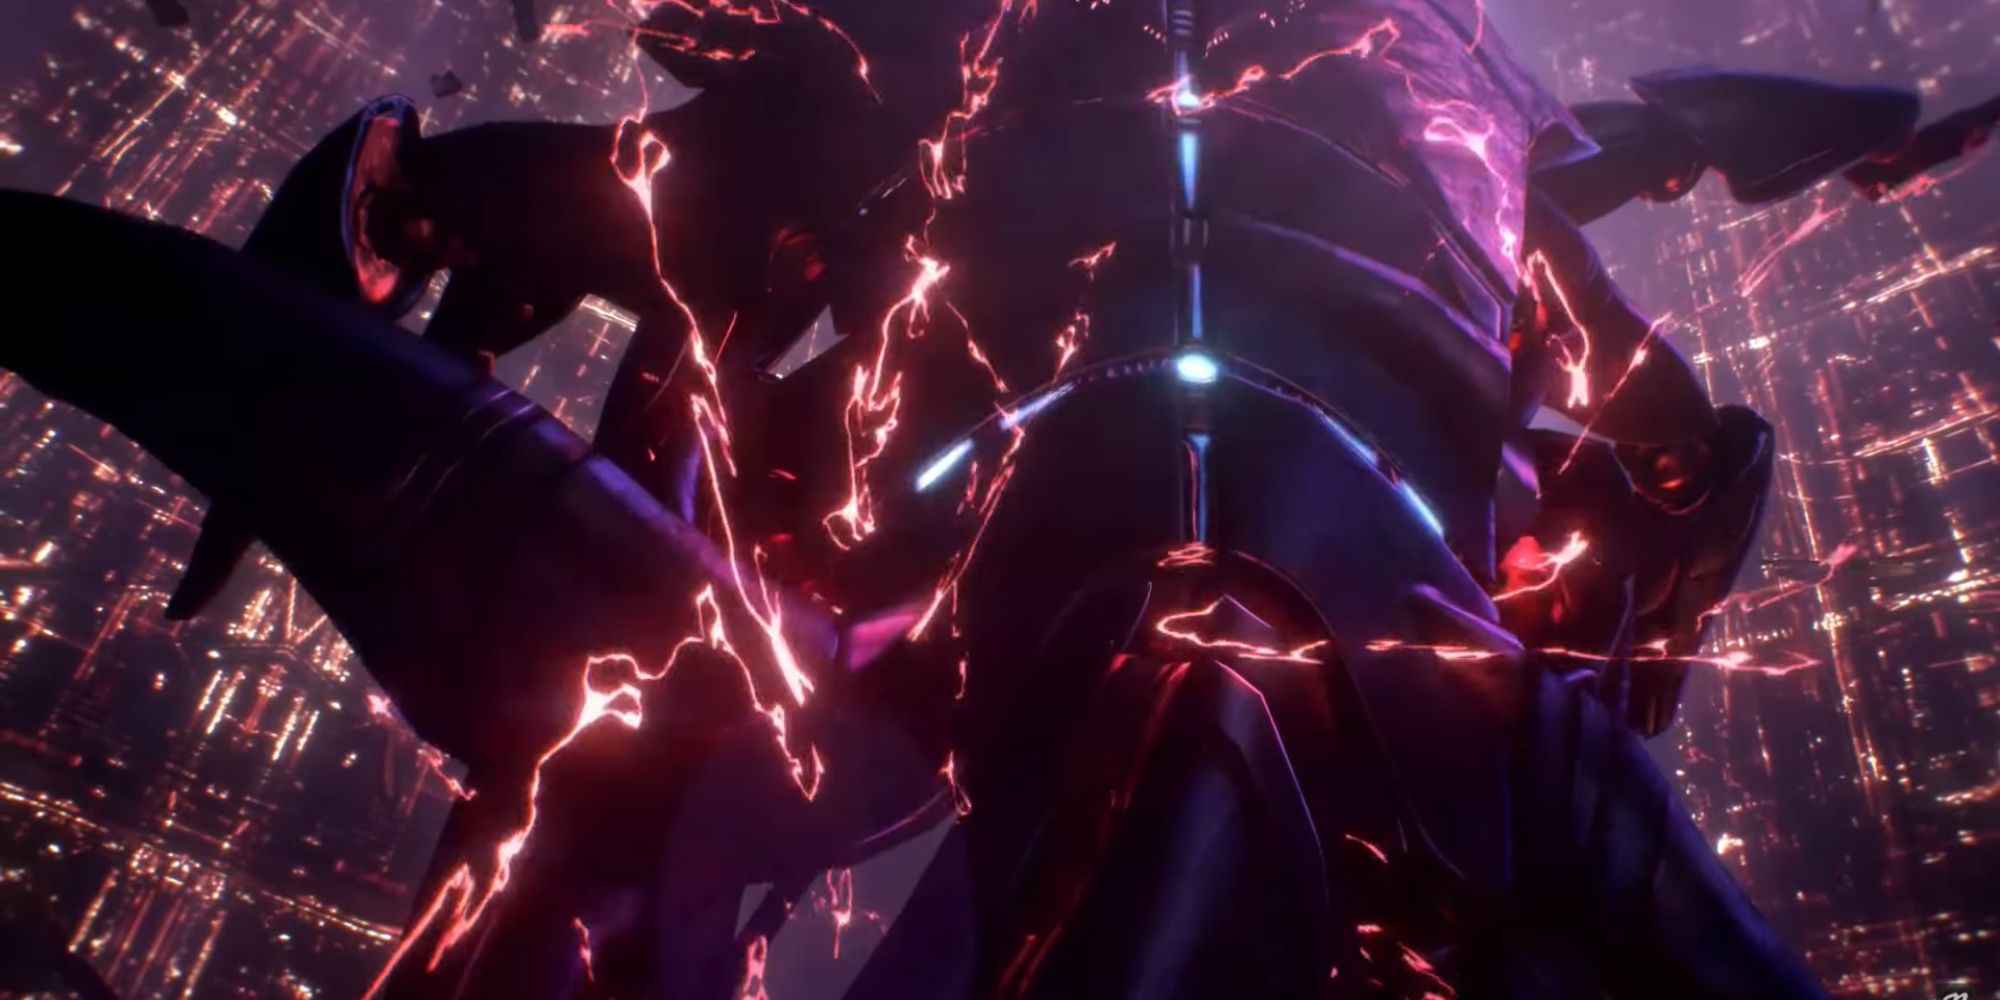 Mass Effect Screenshot Of Sovereign's Death